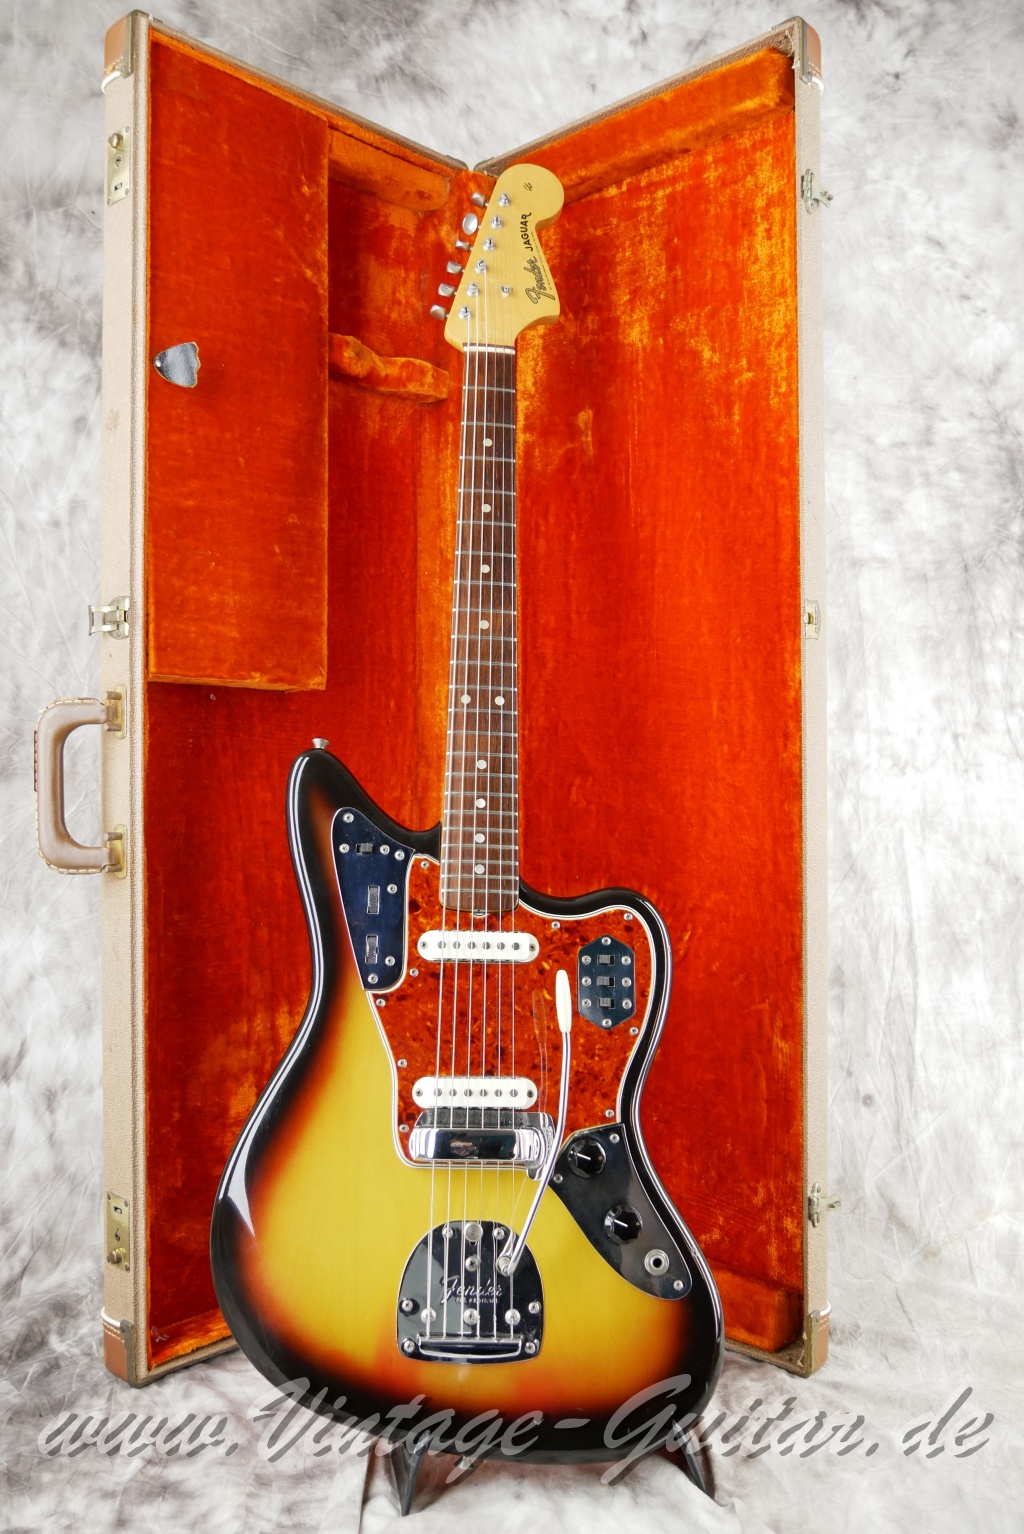 Fender_Jaguar_sunburst_1965_brown_case-020.JPG